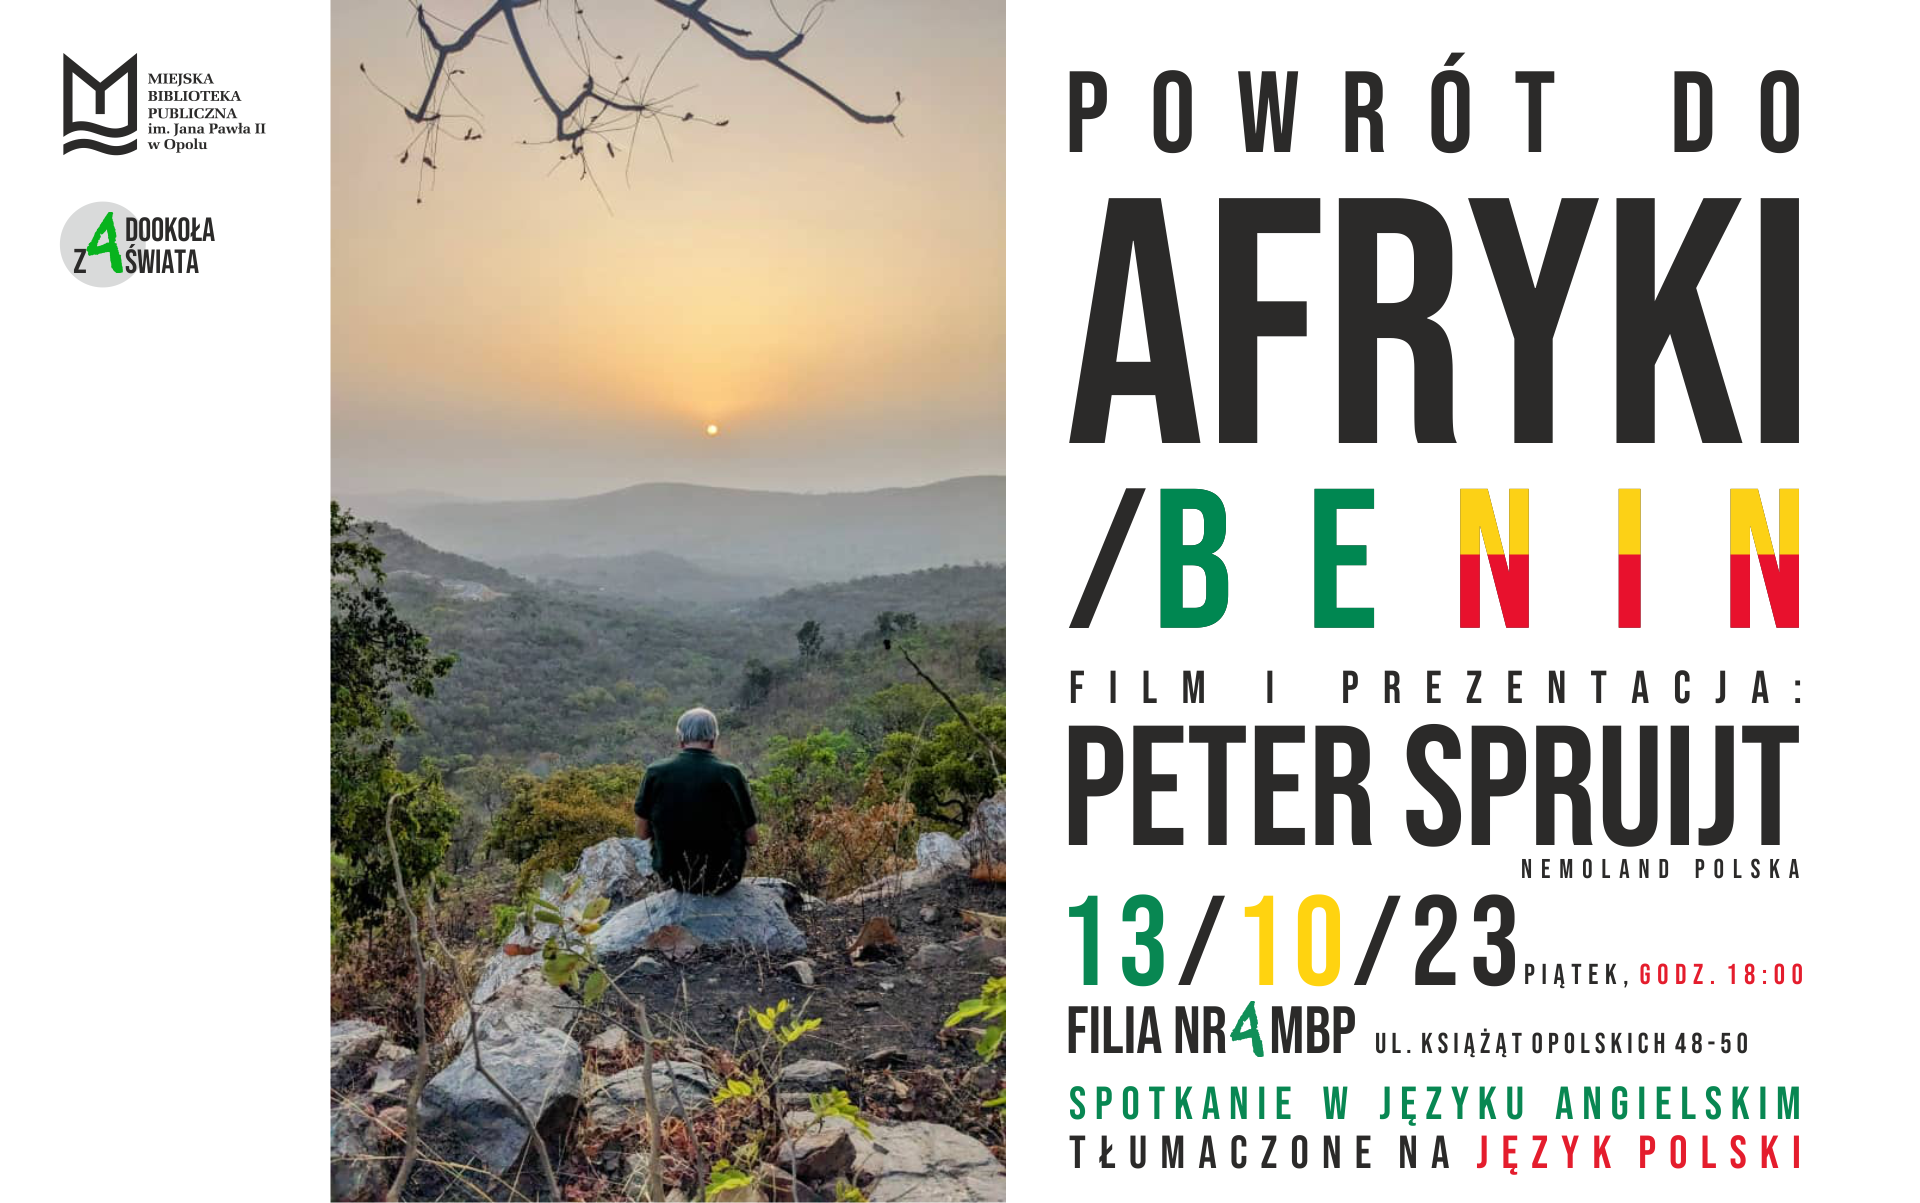 Powrót do Afryki. Benin – spotkanie podróżnicze z Peterem Spruijtem